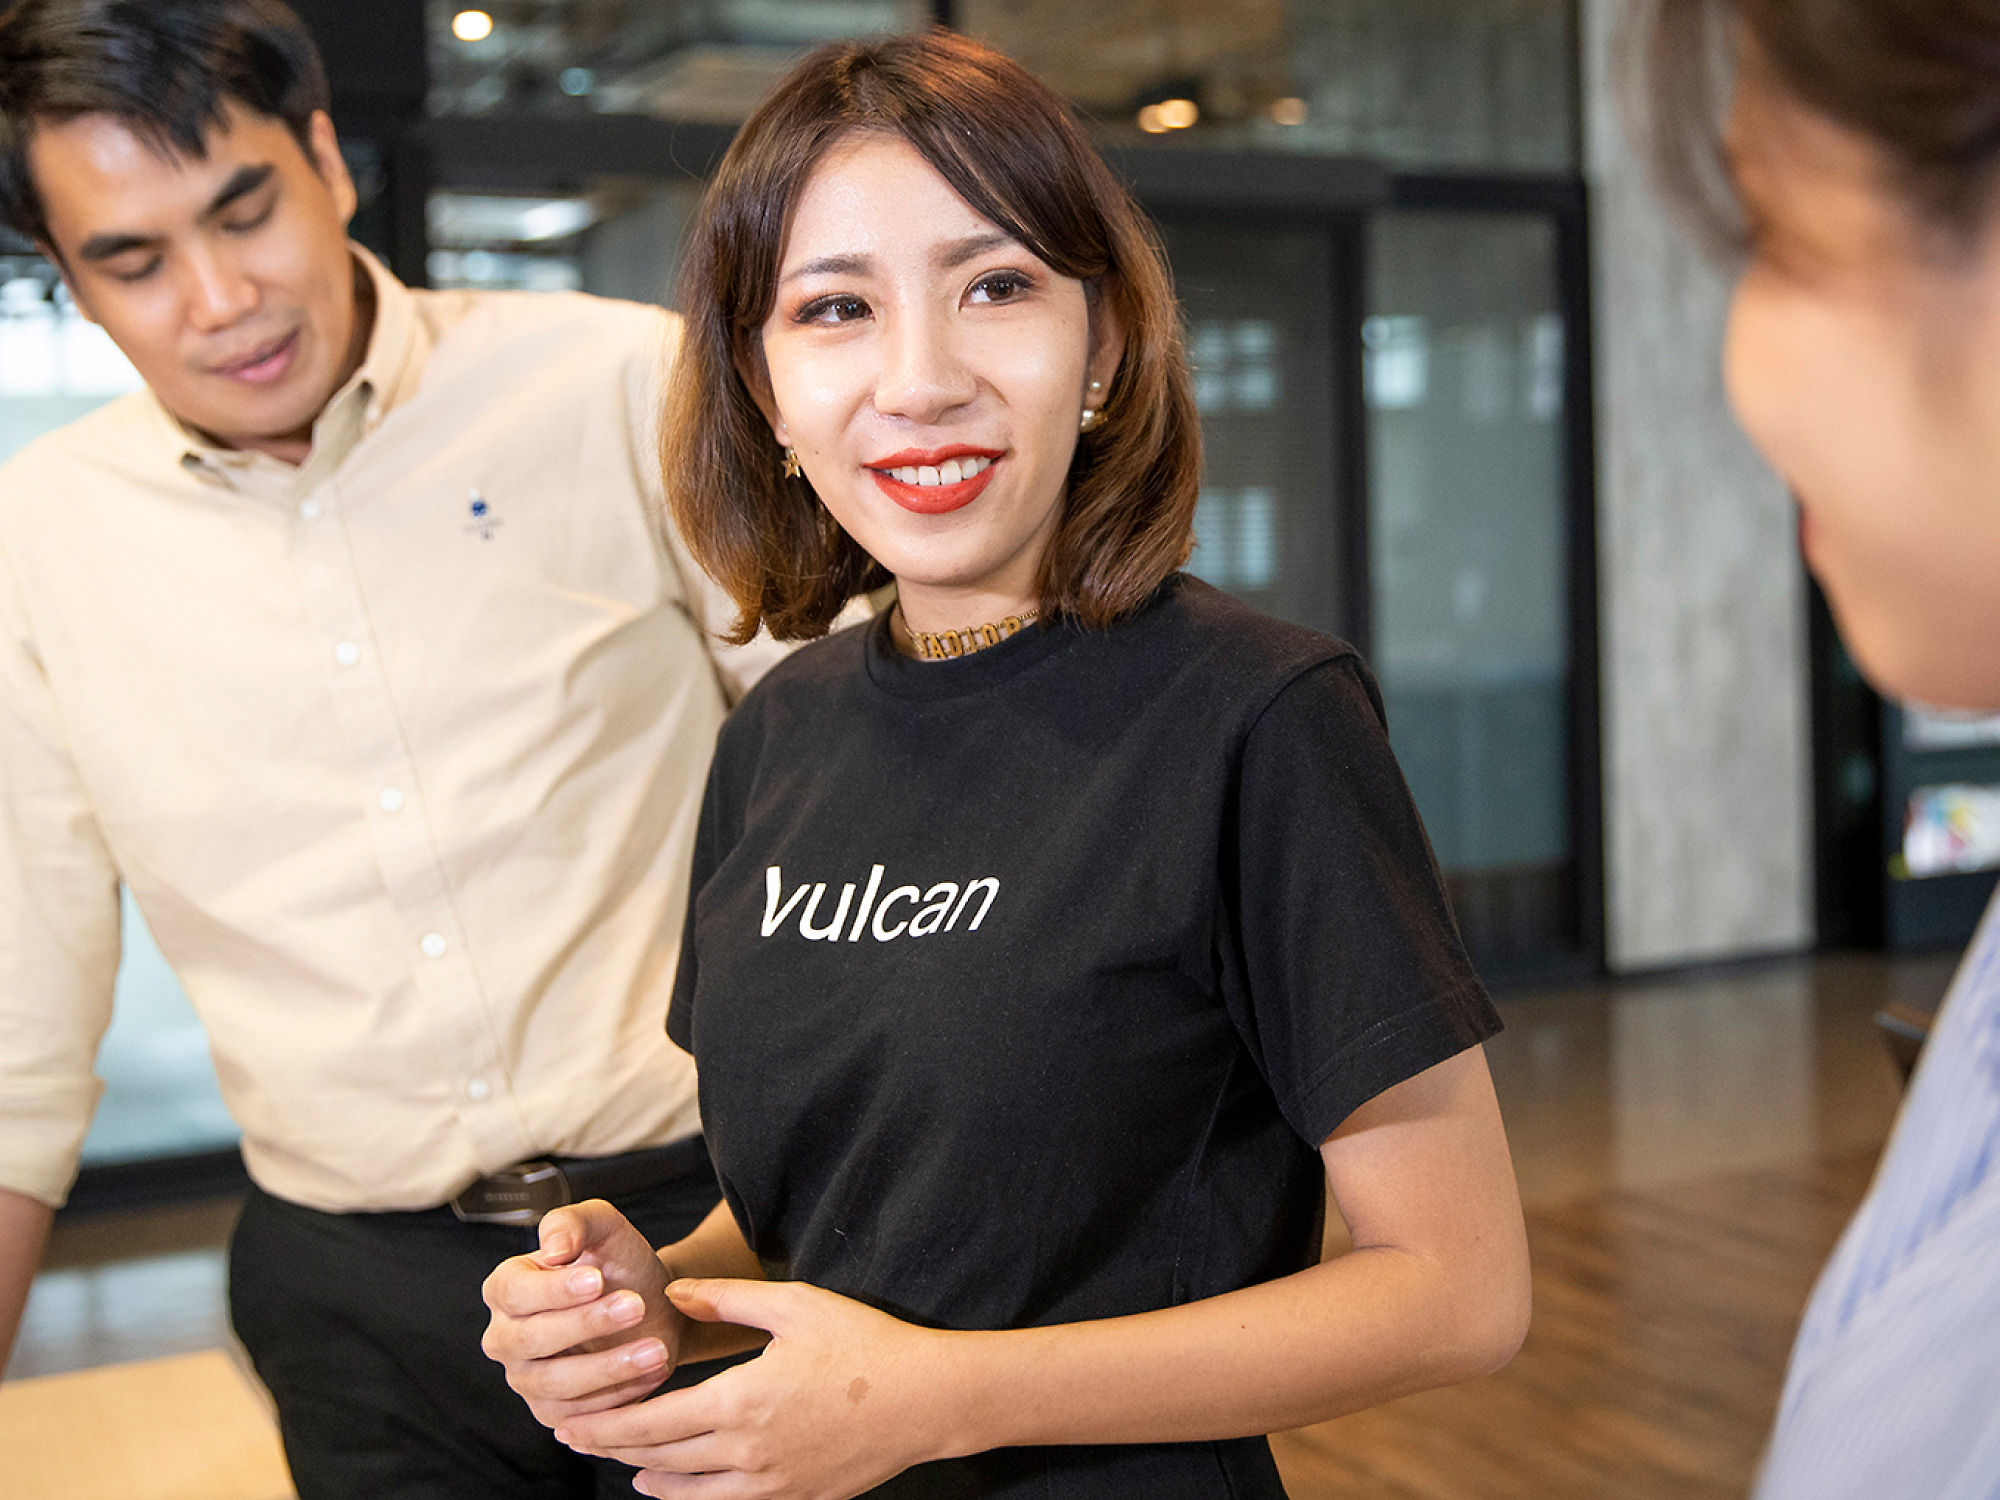 Une jeune femme en t-shirt noir étiquetée en souriant sur un collègue dans un bureau moderne, avec un autre collègue